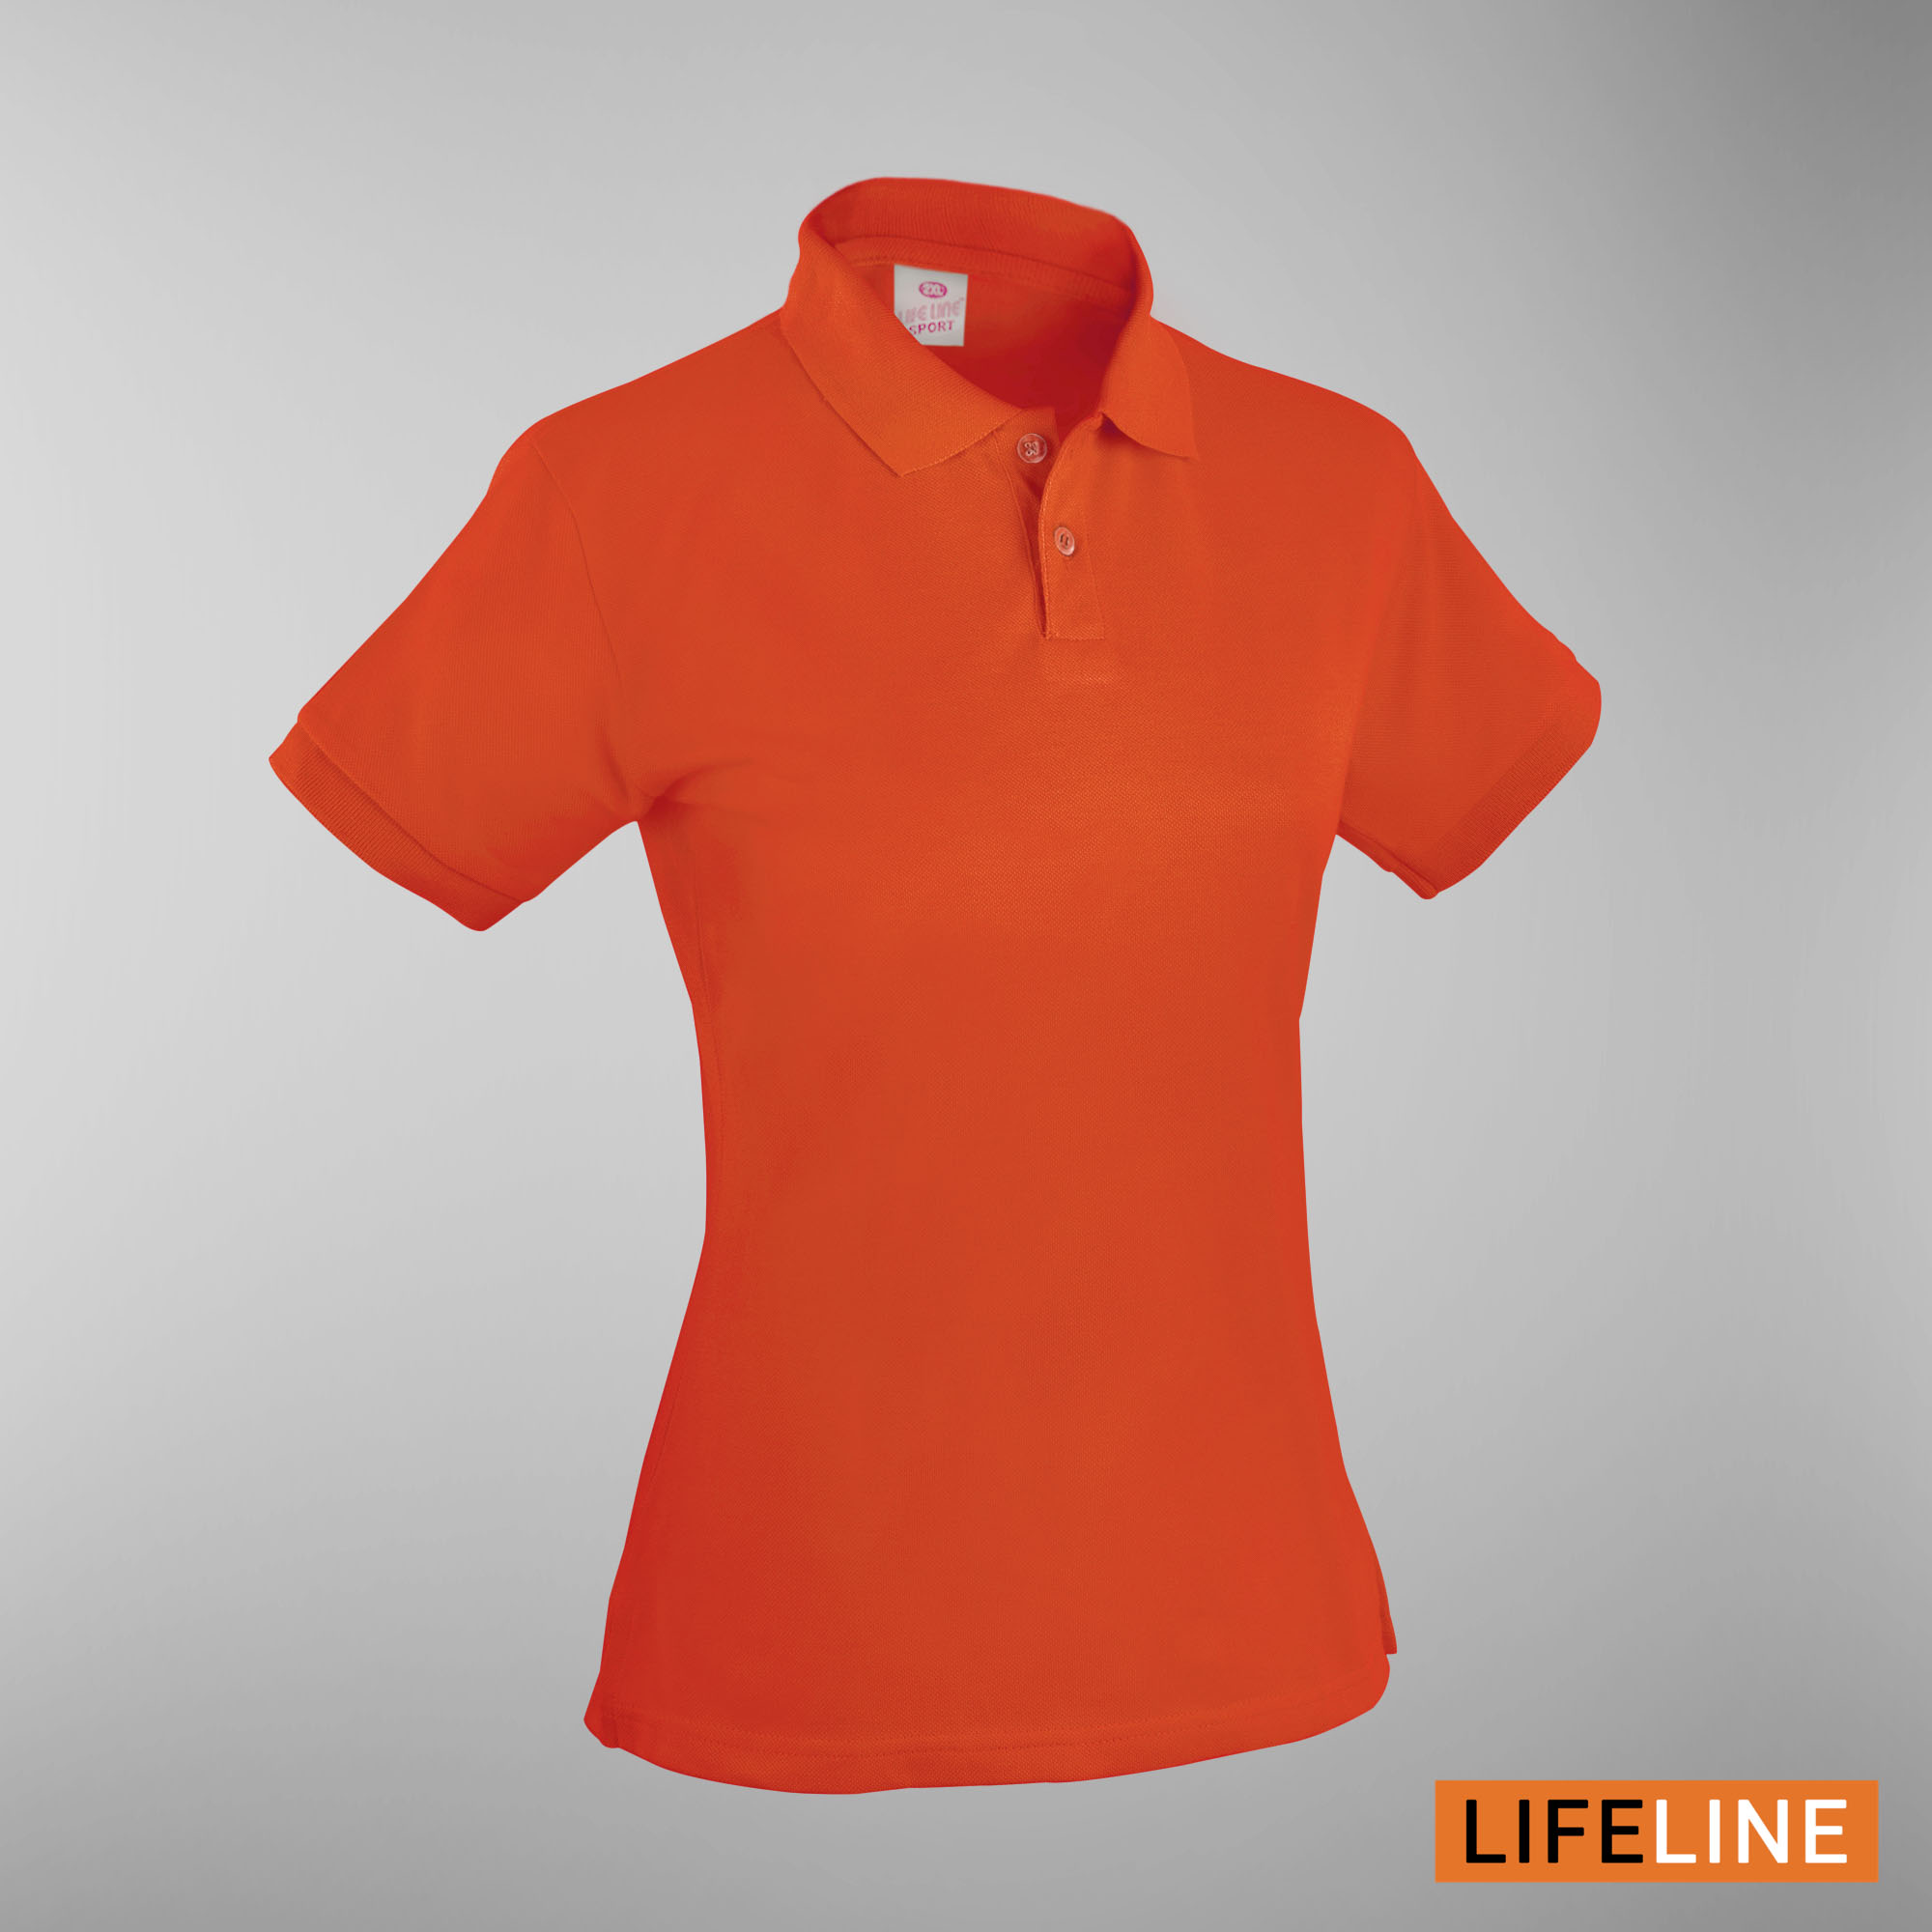 Lifeline Ladies’ Poloshirt (Orange) (Petite Sizes)